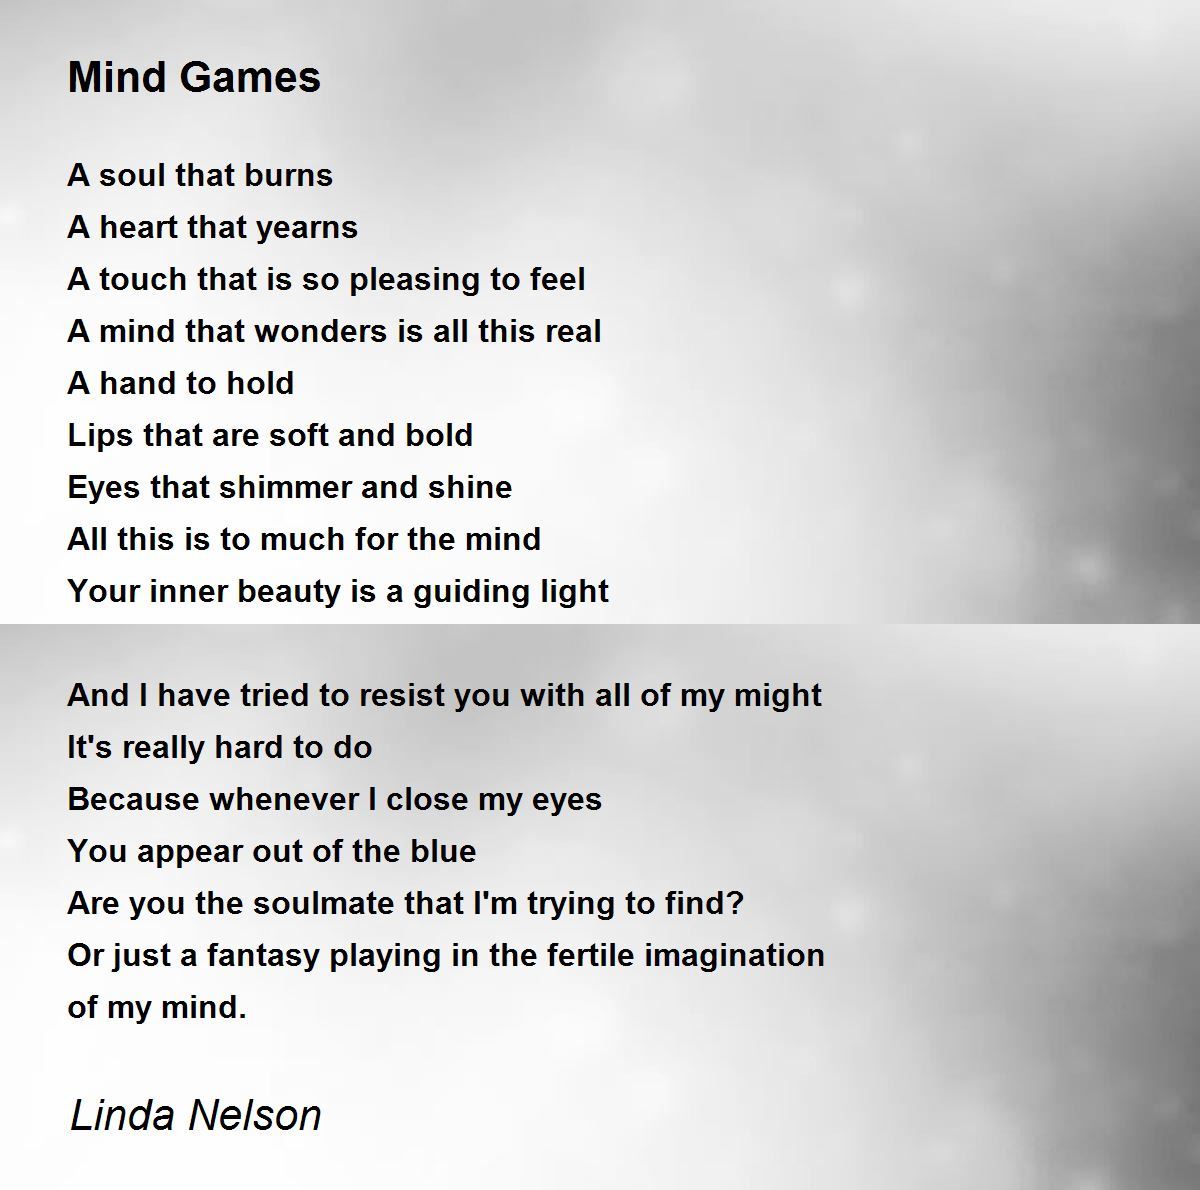 Mind Games - Mind Games Poem by Linda Nelson